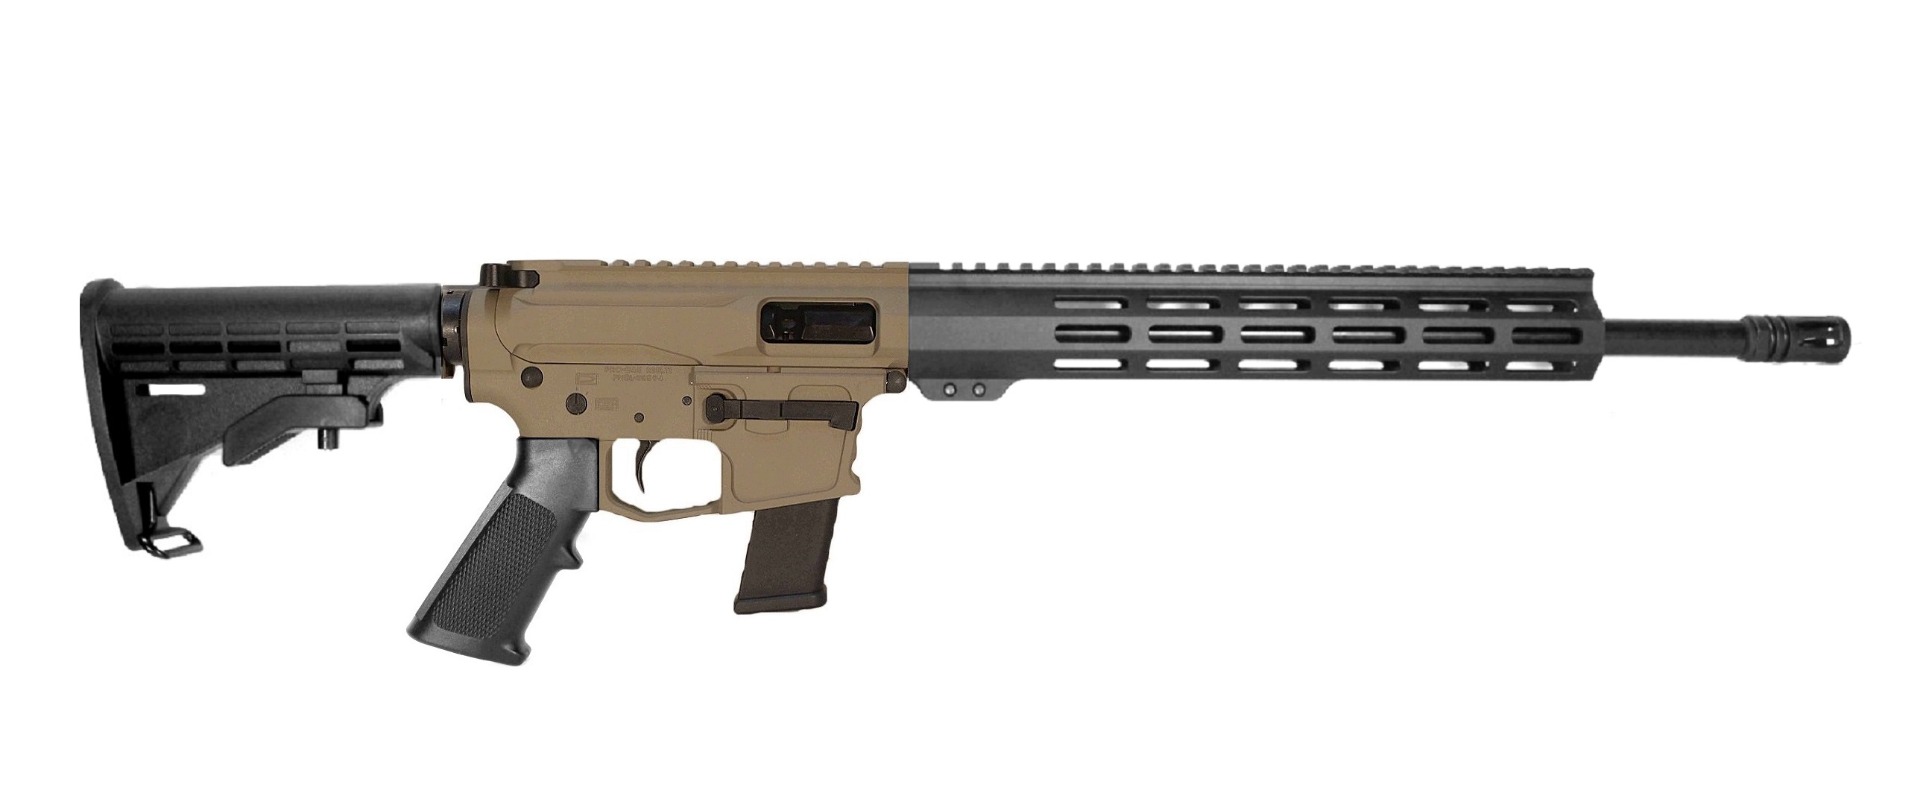 10.5 inch 40 S&W AR Pistol FDE/BLK 2 Color 